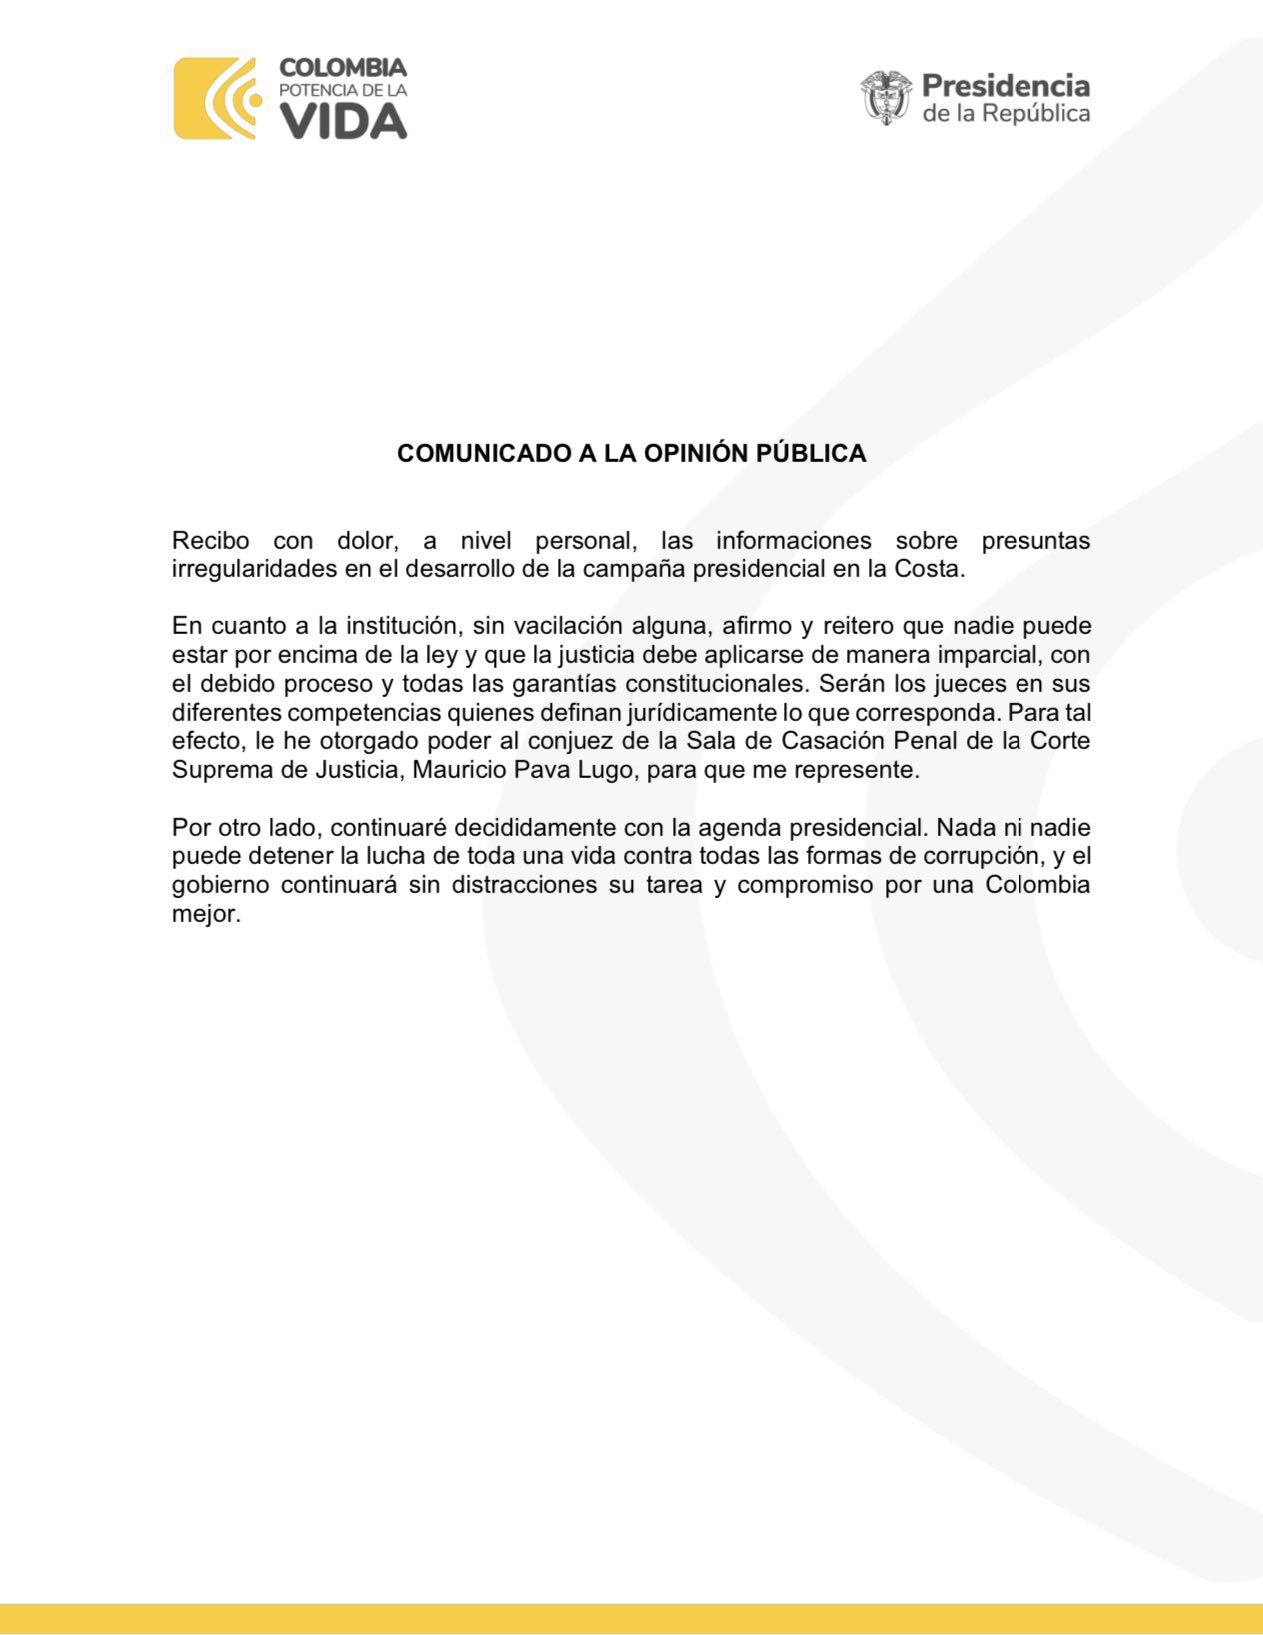 Comunicado del presidente Gustavo Petro.